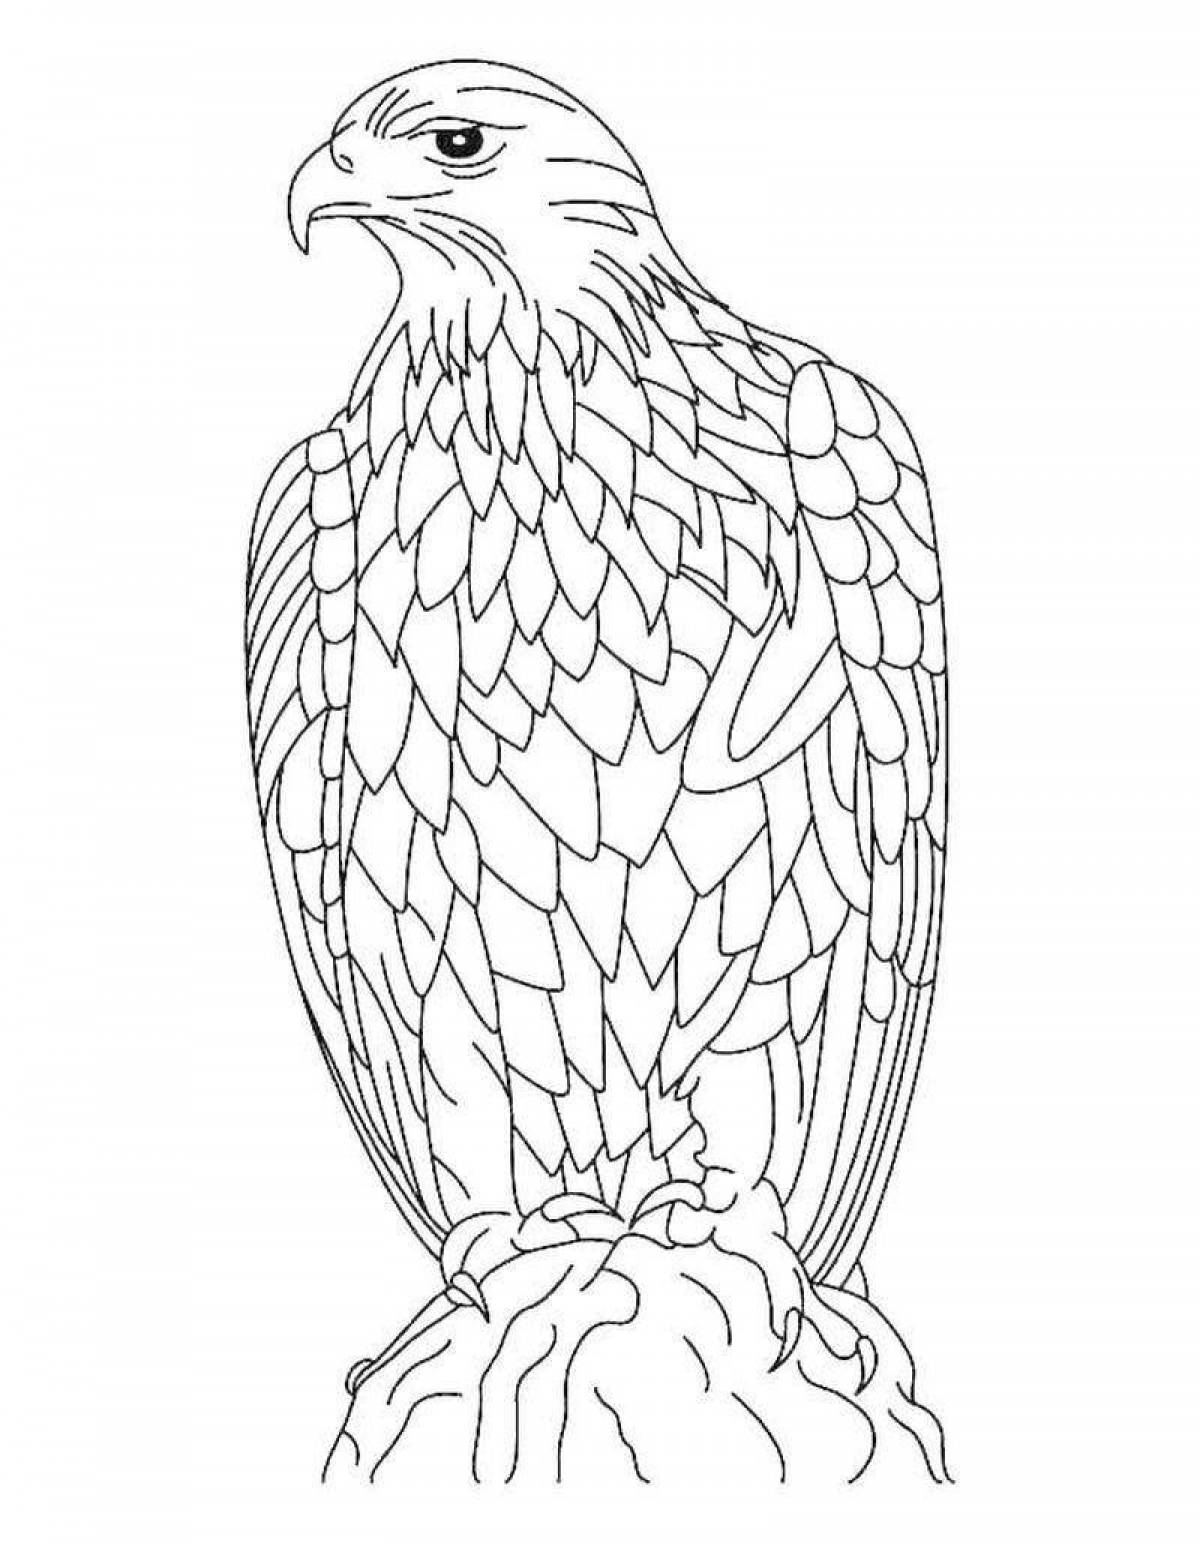 Роскошная раскраска антистрессовый орел